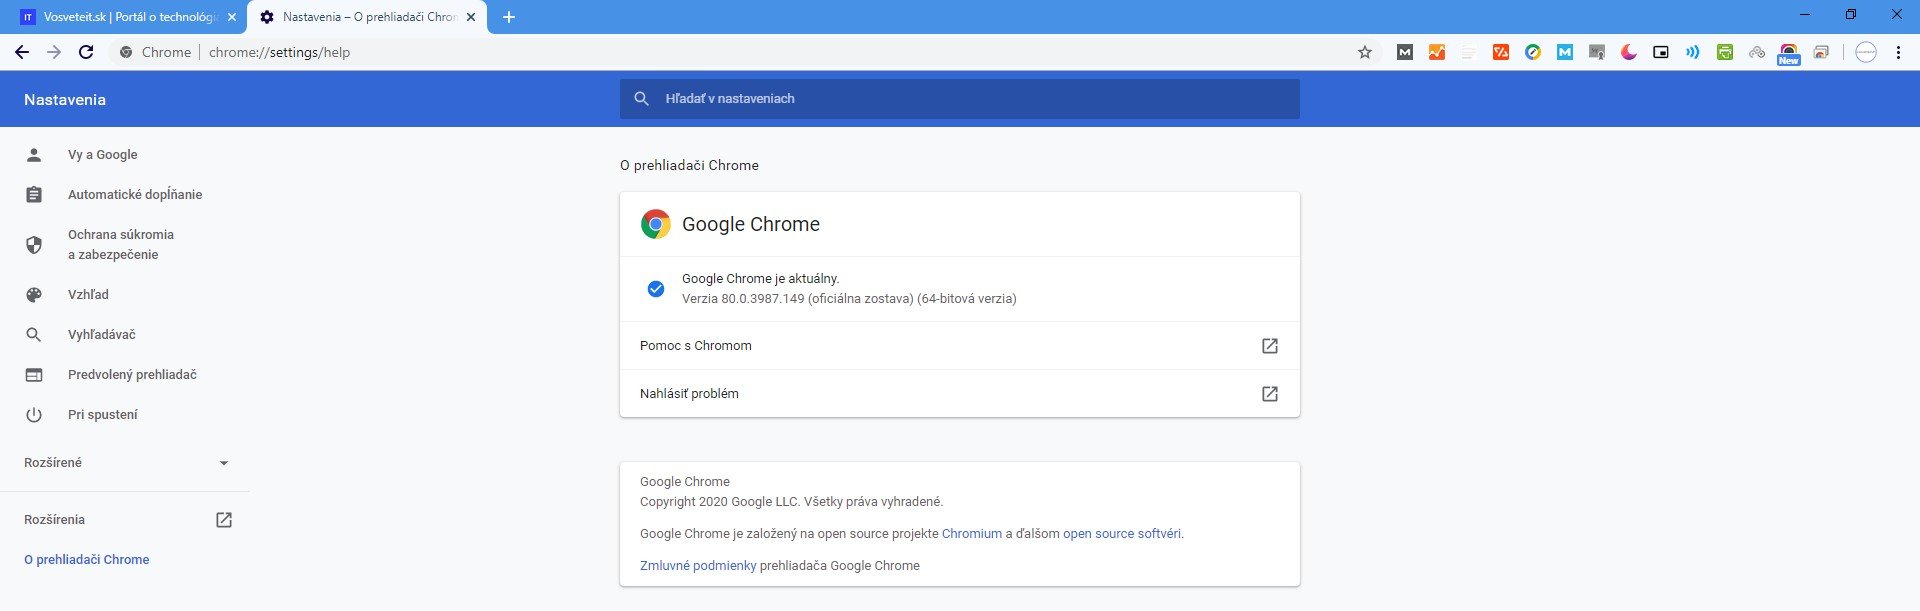 Google Chrome_ako skontrolovat aktualnu verzia prehliadaca